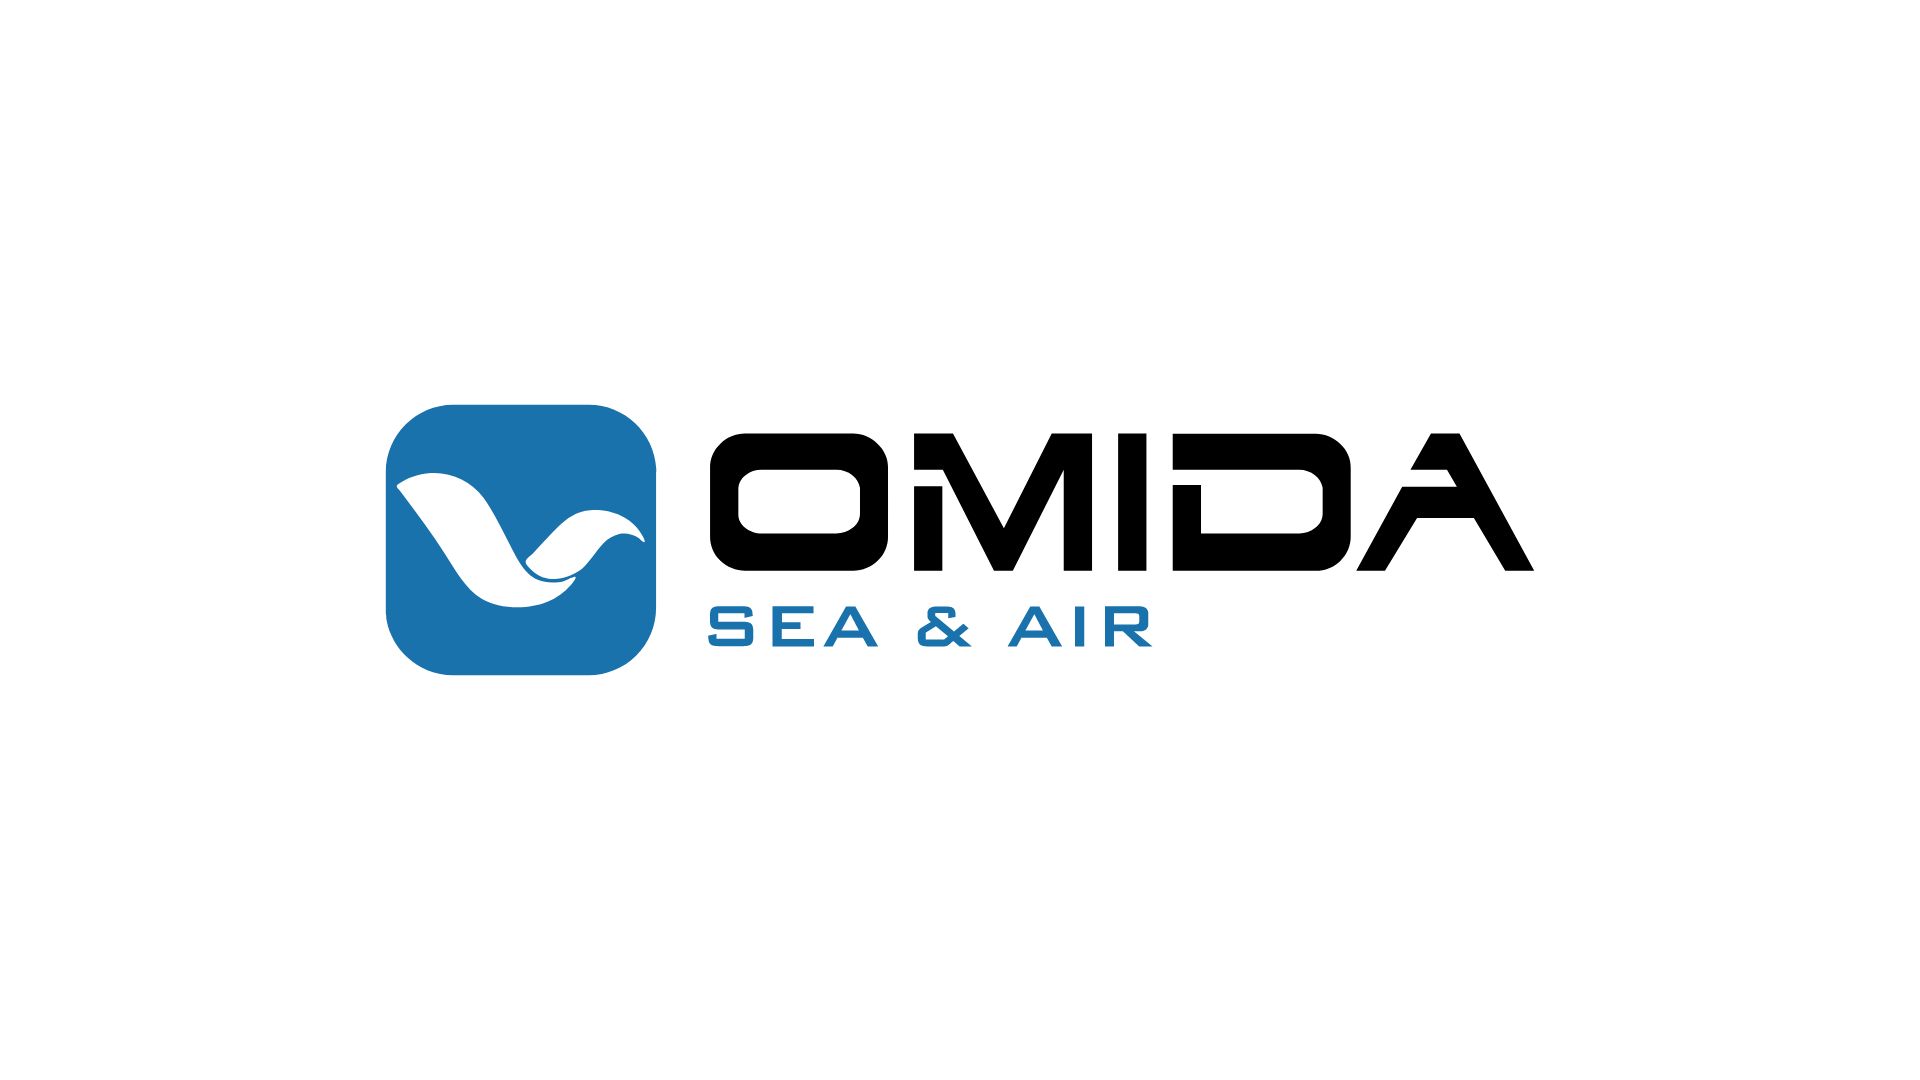 Omida Sea And Air S.A. | Omida Sea And Air S.A.